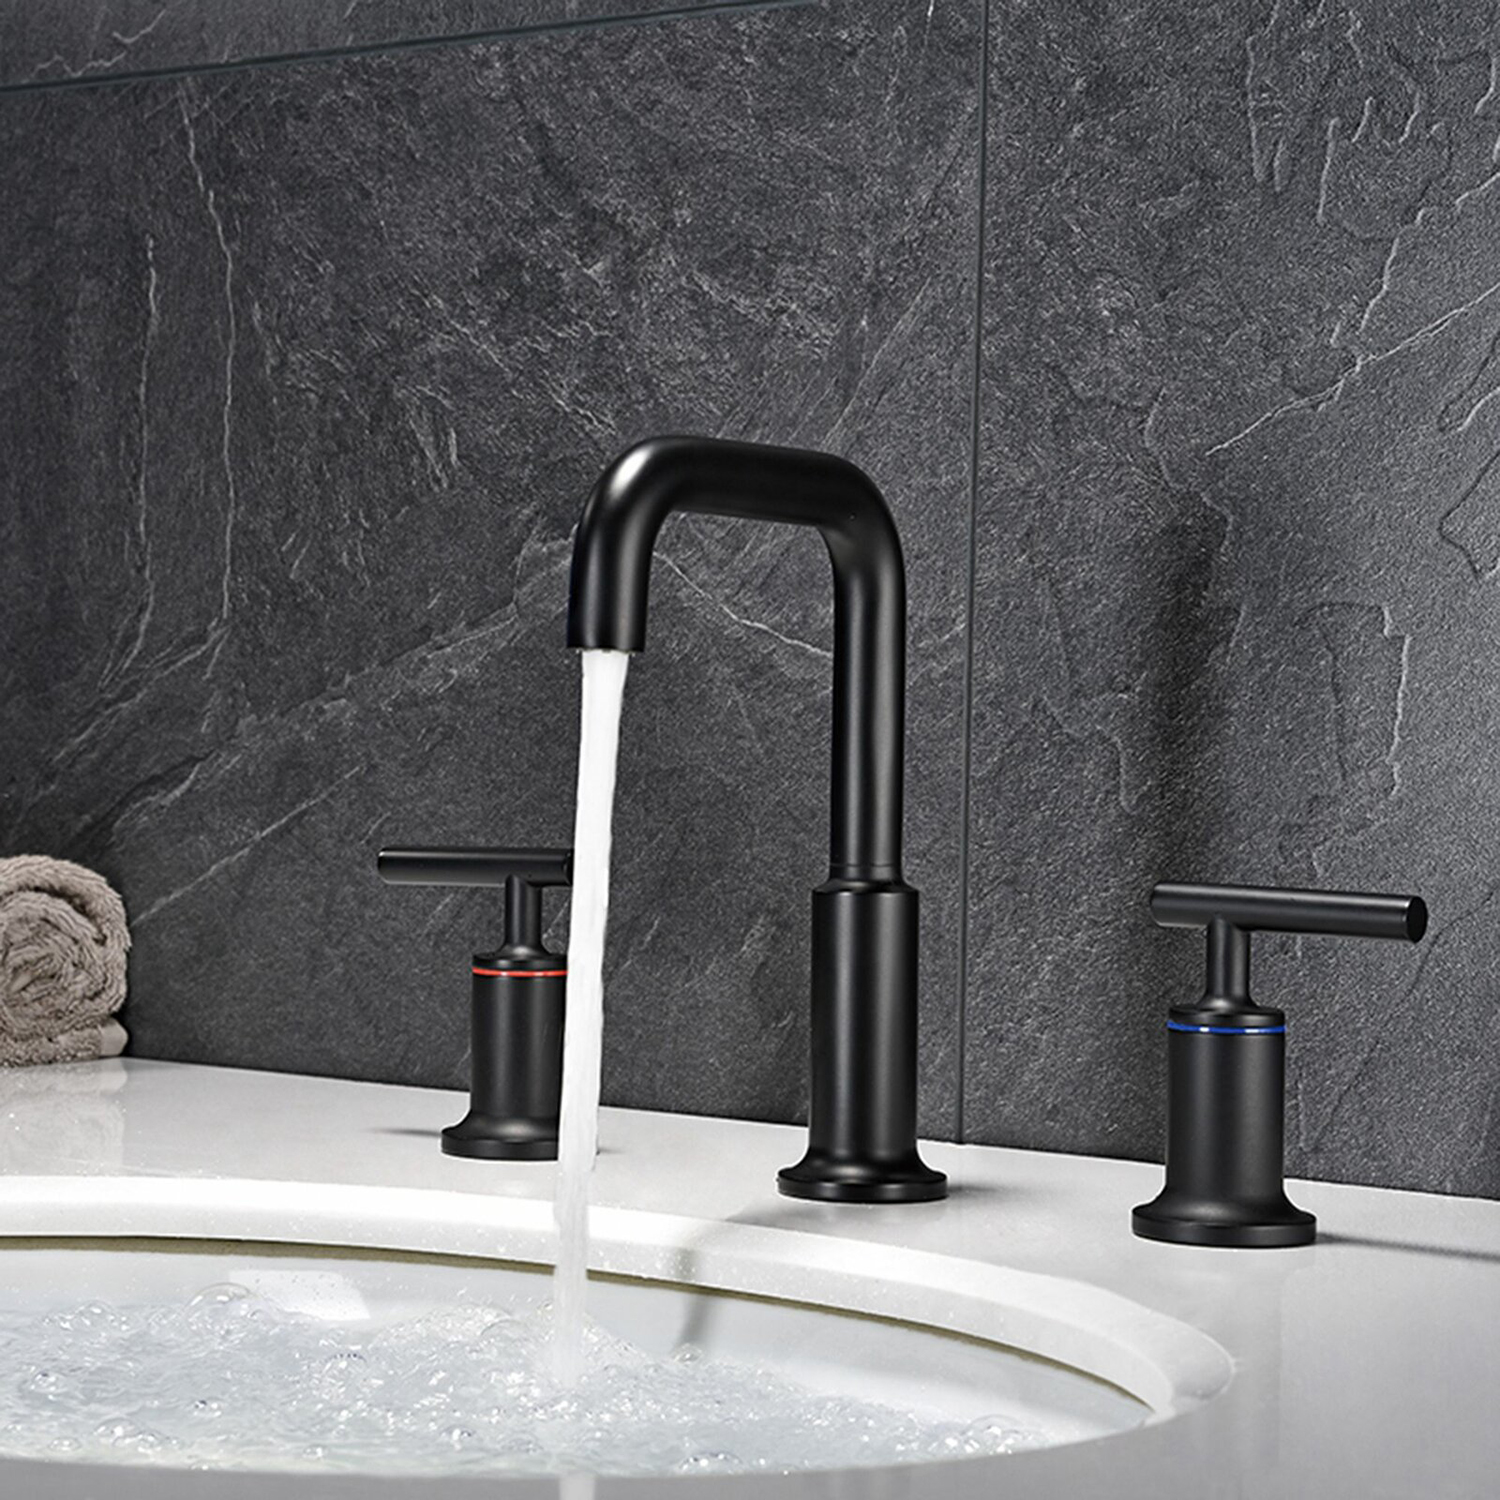 Grifo para lavabo de baño Aquacubic High Arc de dos manijas, color negro, 3 orificios con desagüe emergente